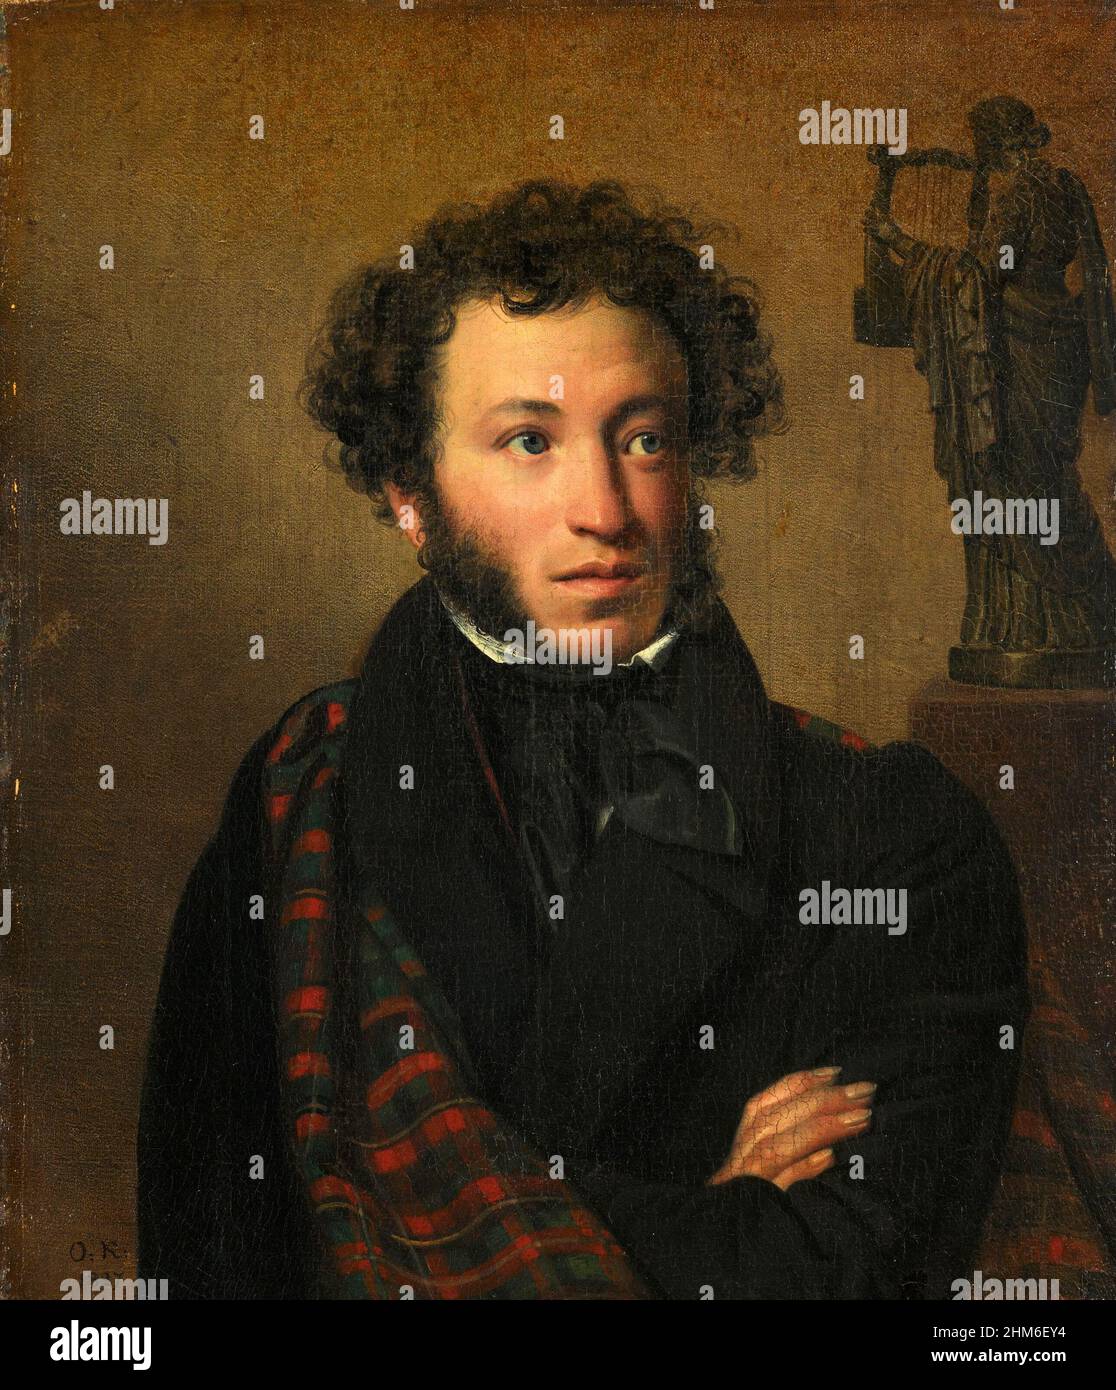 Ein Porträt des russischen Schriftstellers Alexander Puschkin, Autor von Eugene Onegin, von 1837, als er 28 Jahre alt war. Stockfoto